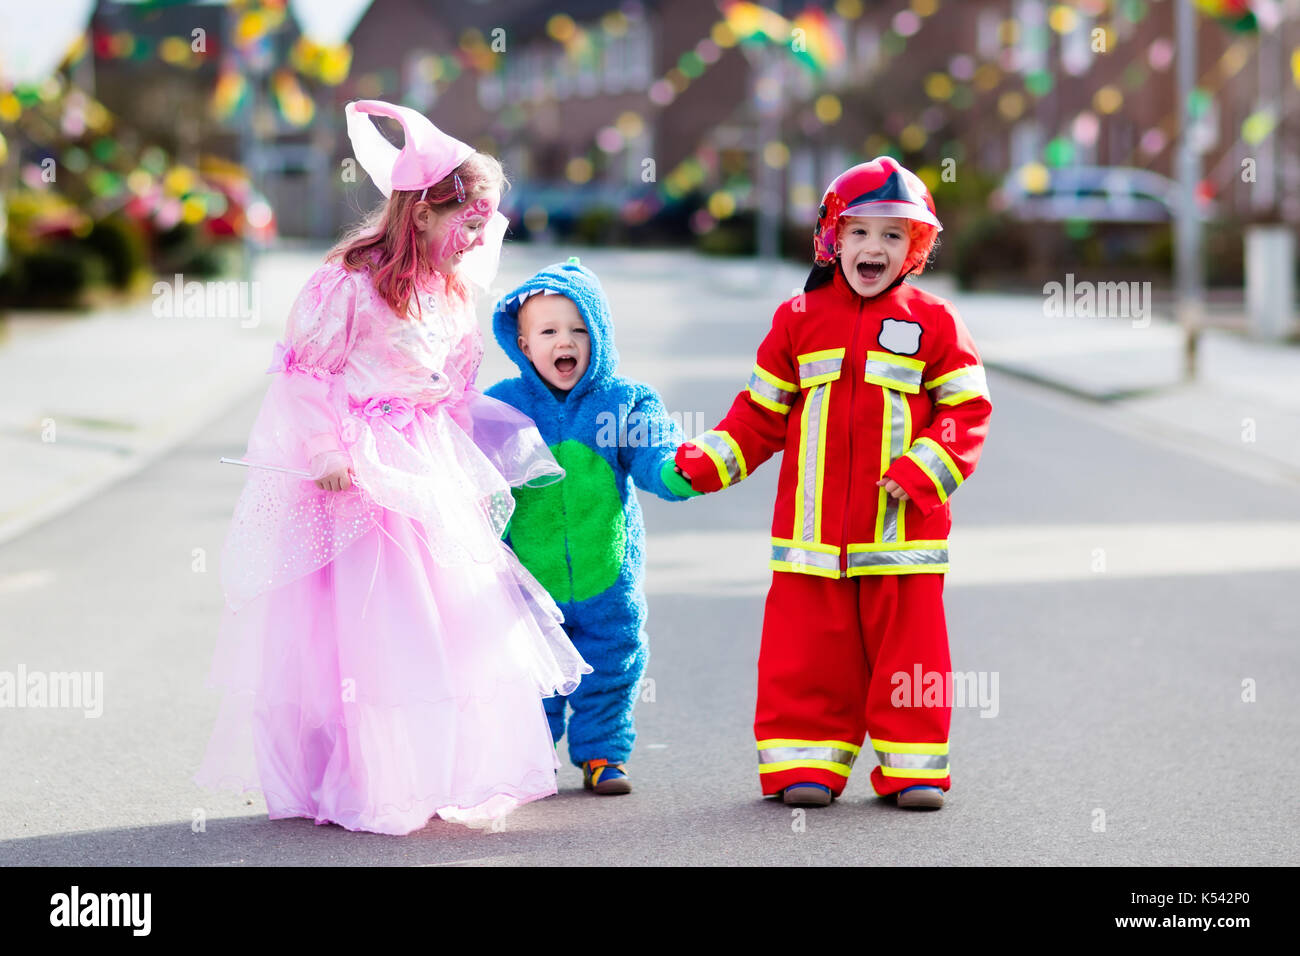 Los niños en halloween trick or treat. los niños en Halloween Disfraces con  bolsas de golosinas decoradas caminando en barrios de la ciudad con la  tradición del truco o trato. bebé y